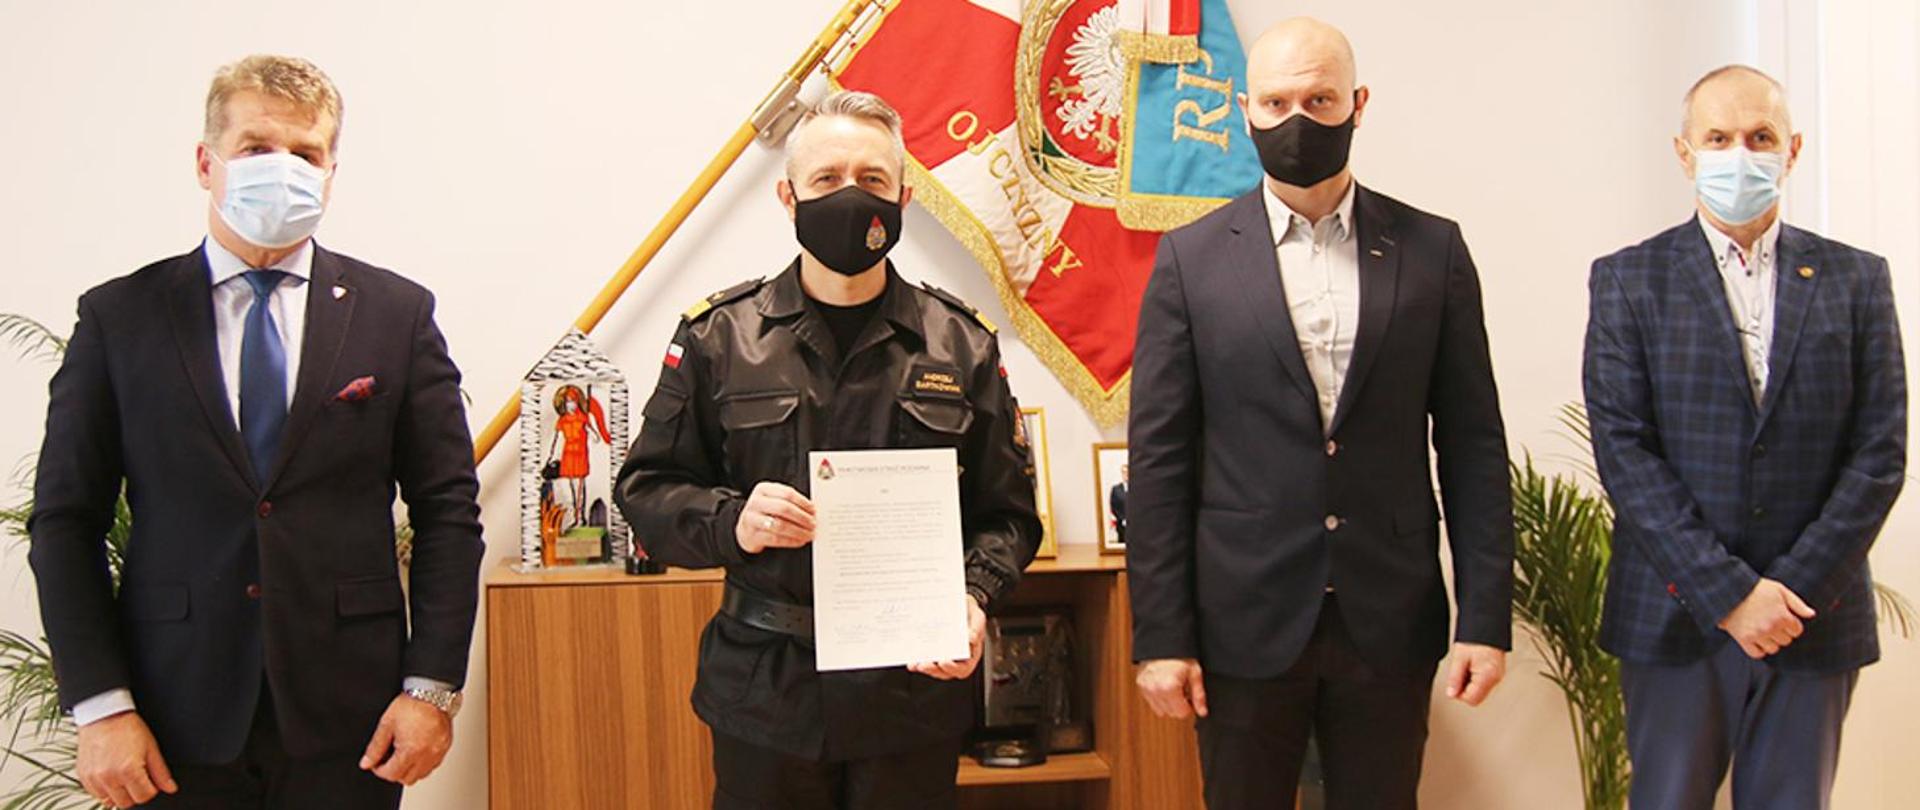 Zdjęcie Komendanta Głównego Państwowej Straży Pożarnej nadbrygadiera Andrzeja Bartkowiaka trzymającego treść apelu wraz z Przewodniczącymi central związków zawodowych działających w strukturach PSP.